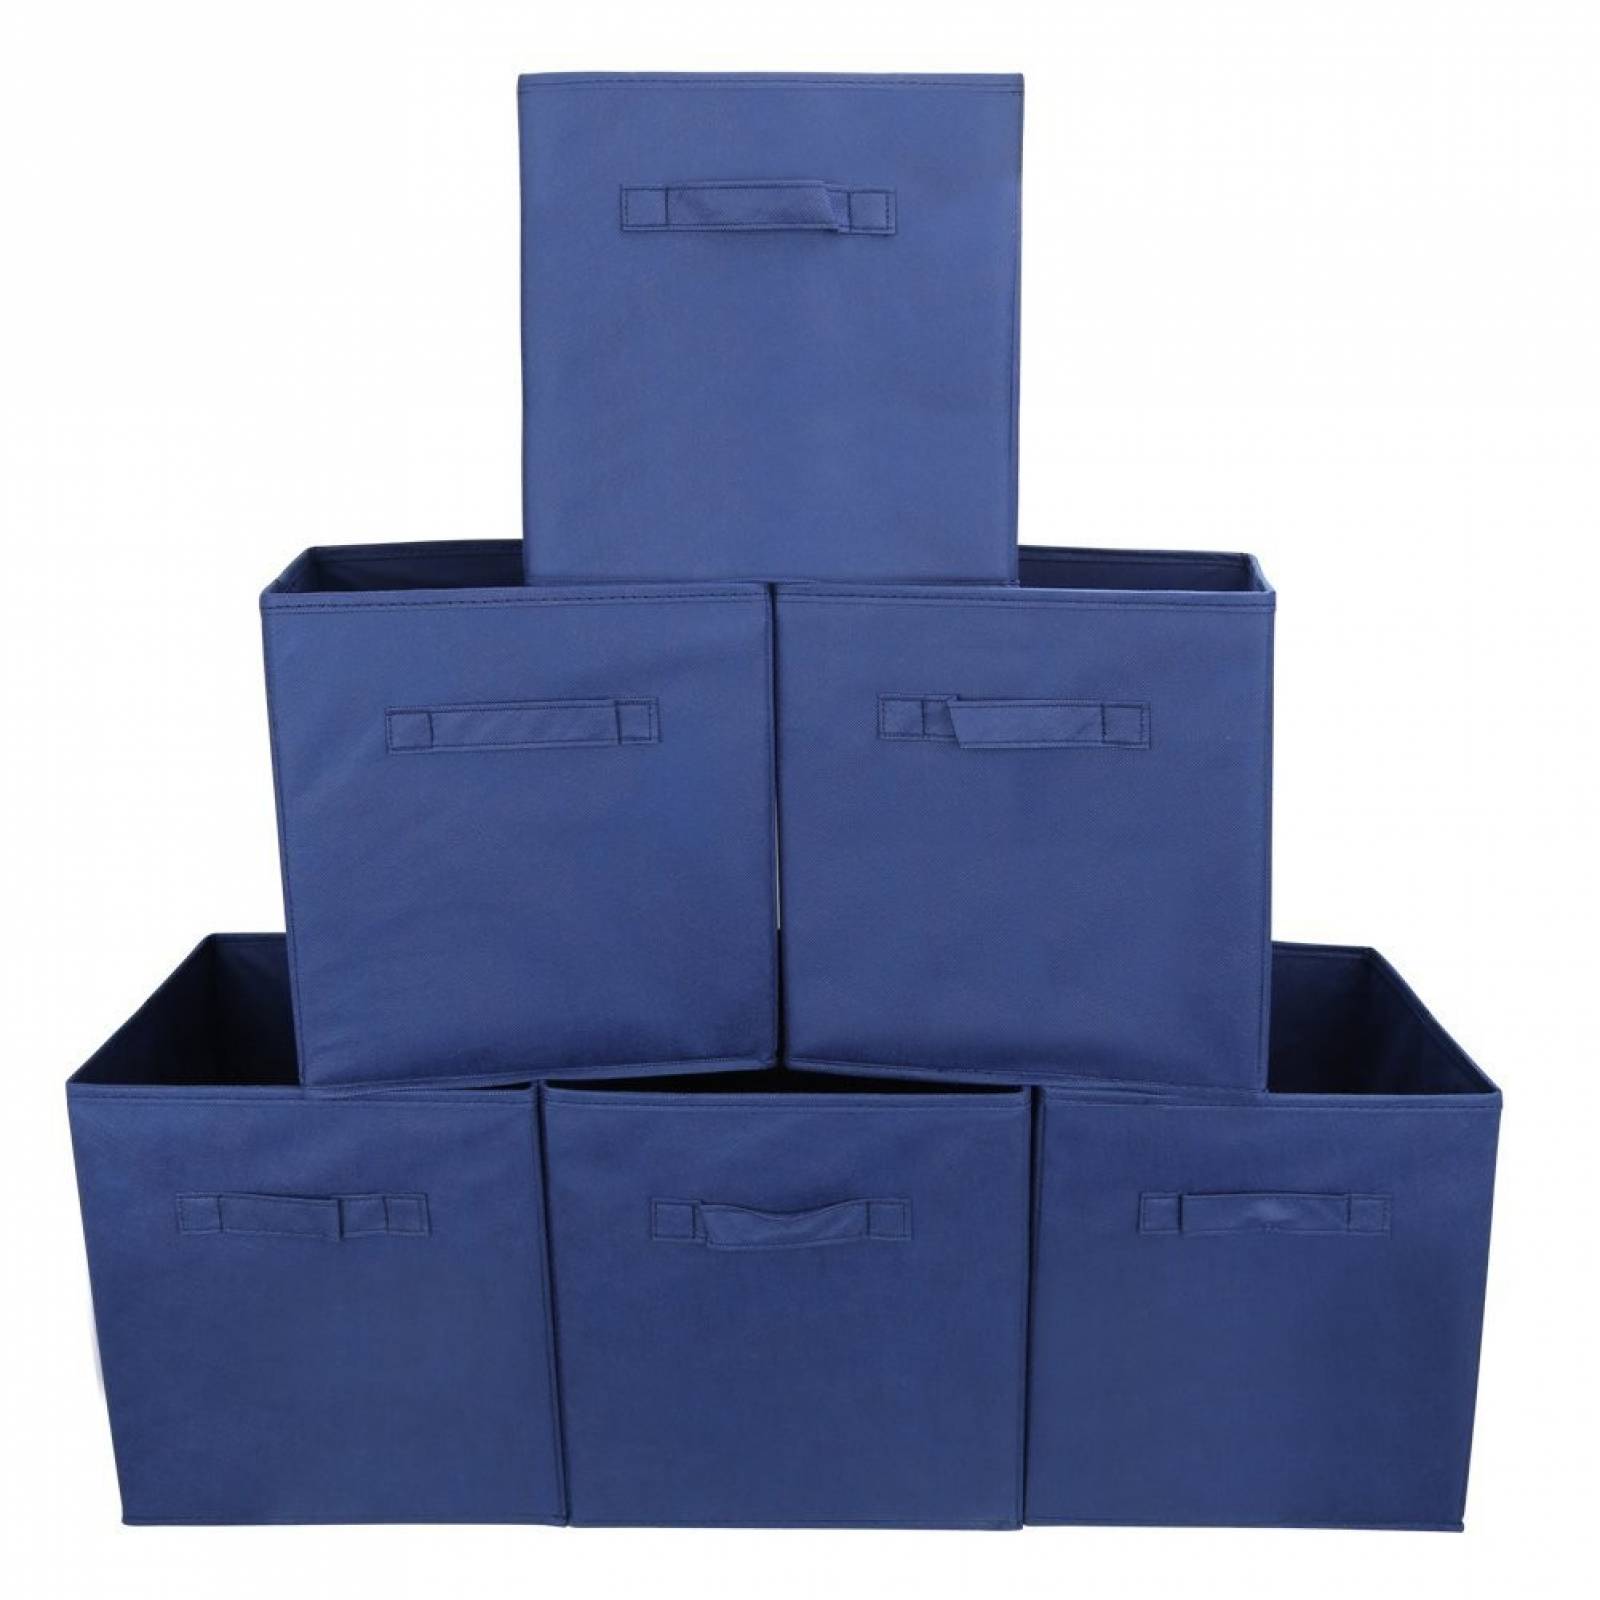 Cajas Organizadoras Ezoware Juego De 6 Mide 11x10 Pulg -azul